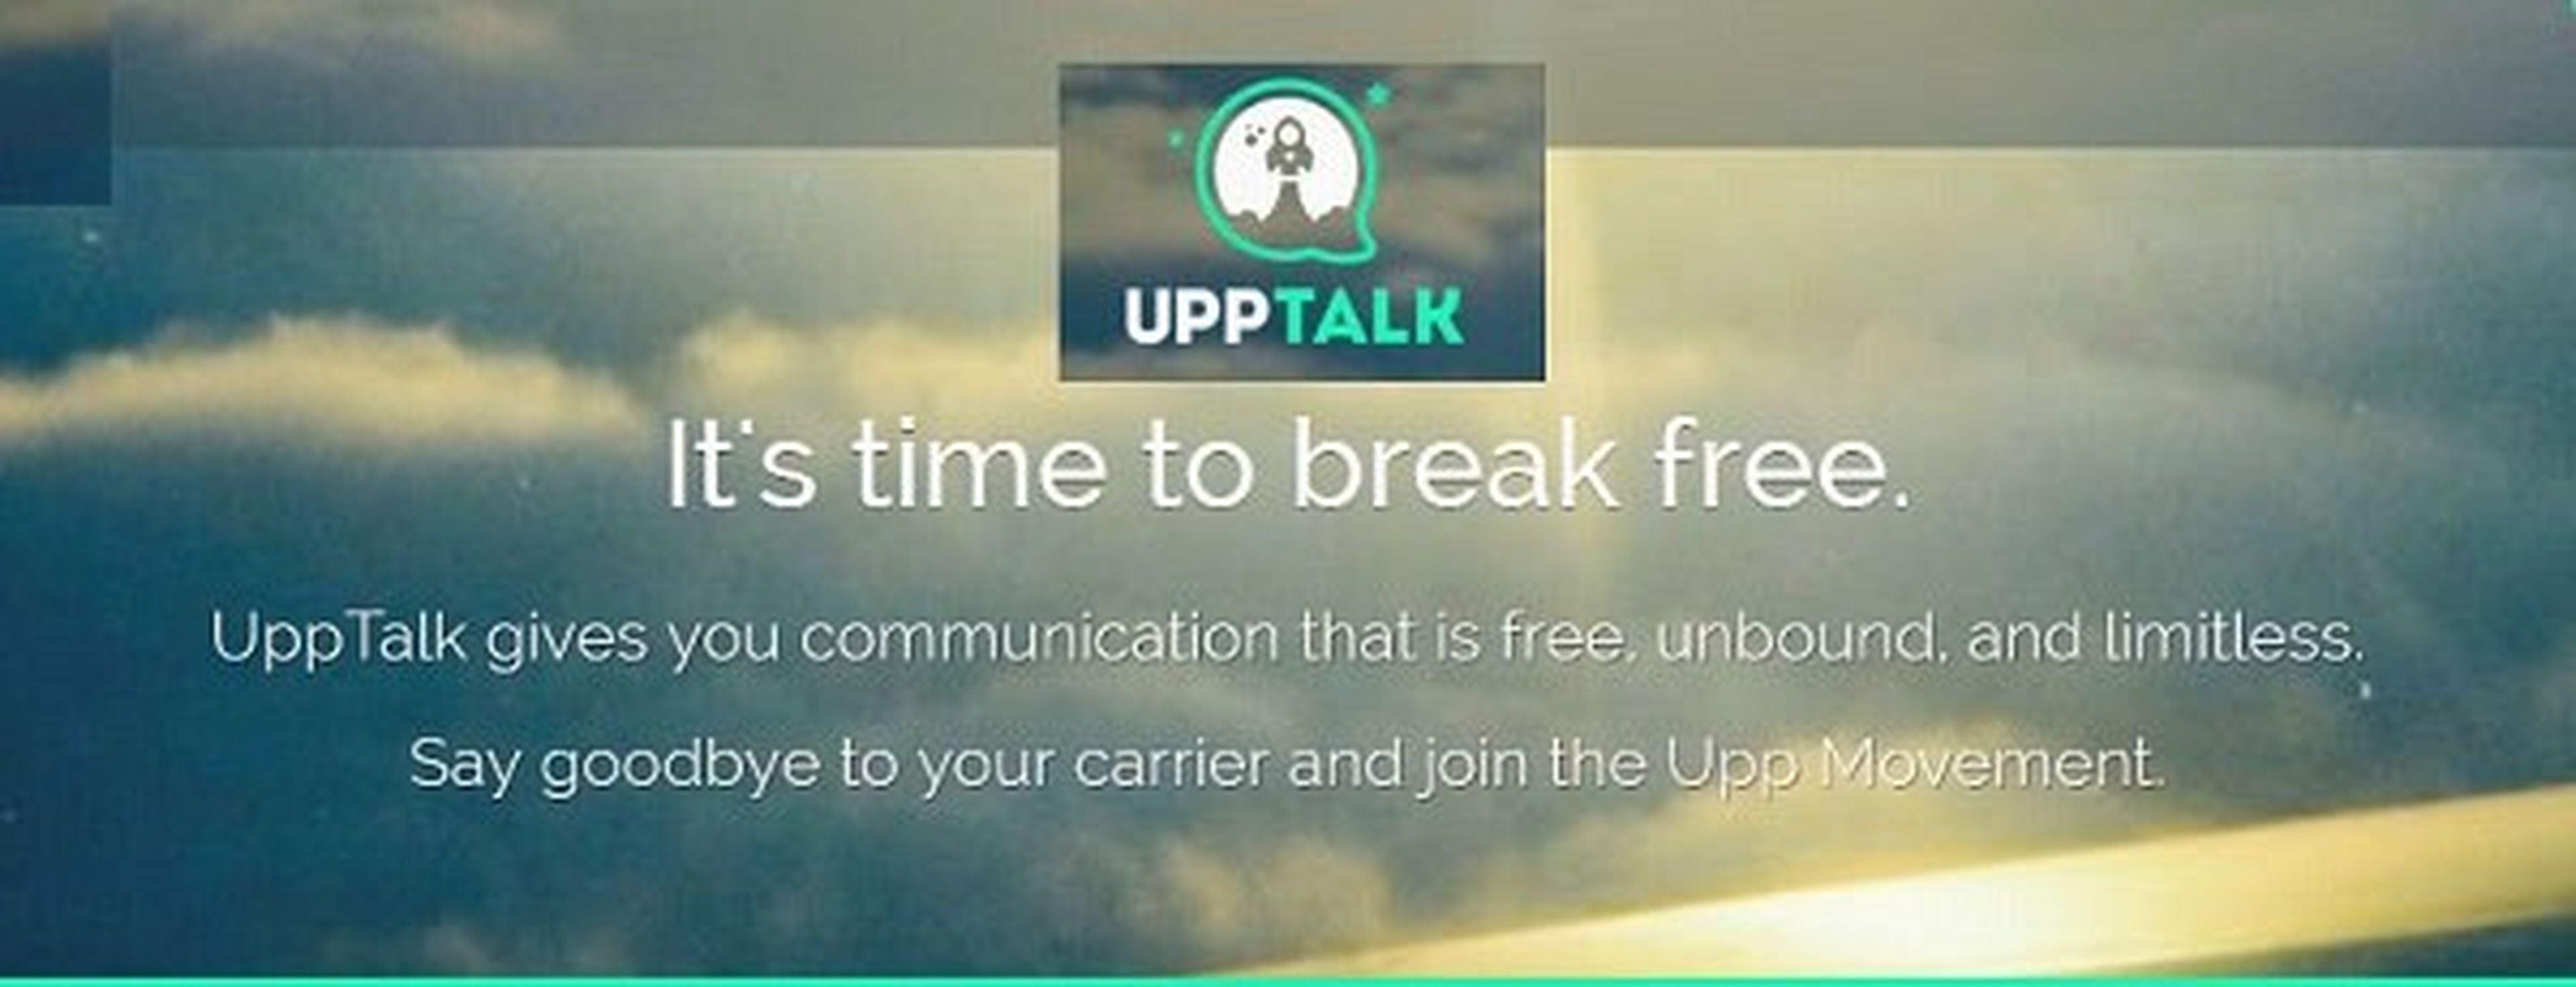 UppTalk permite a iOS y Android llamar y enviar SMS gratis